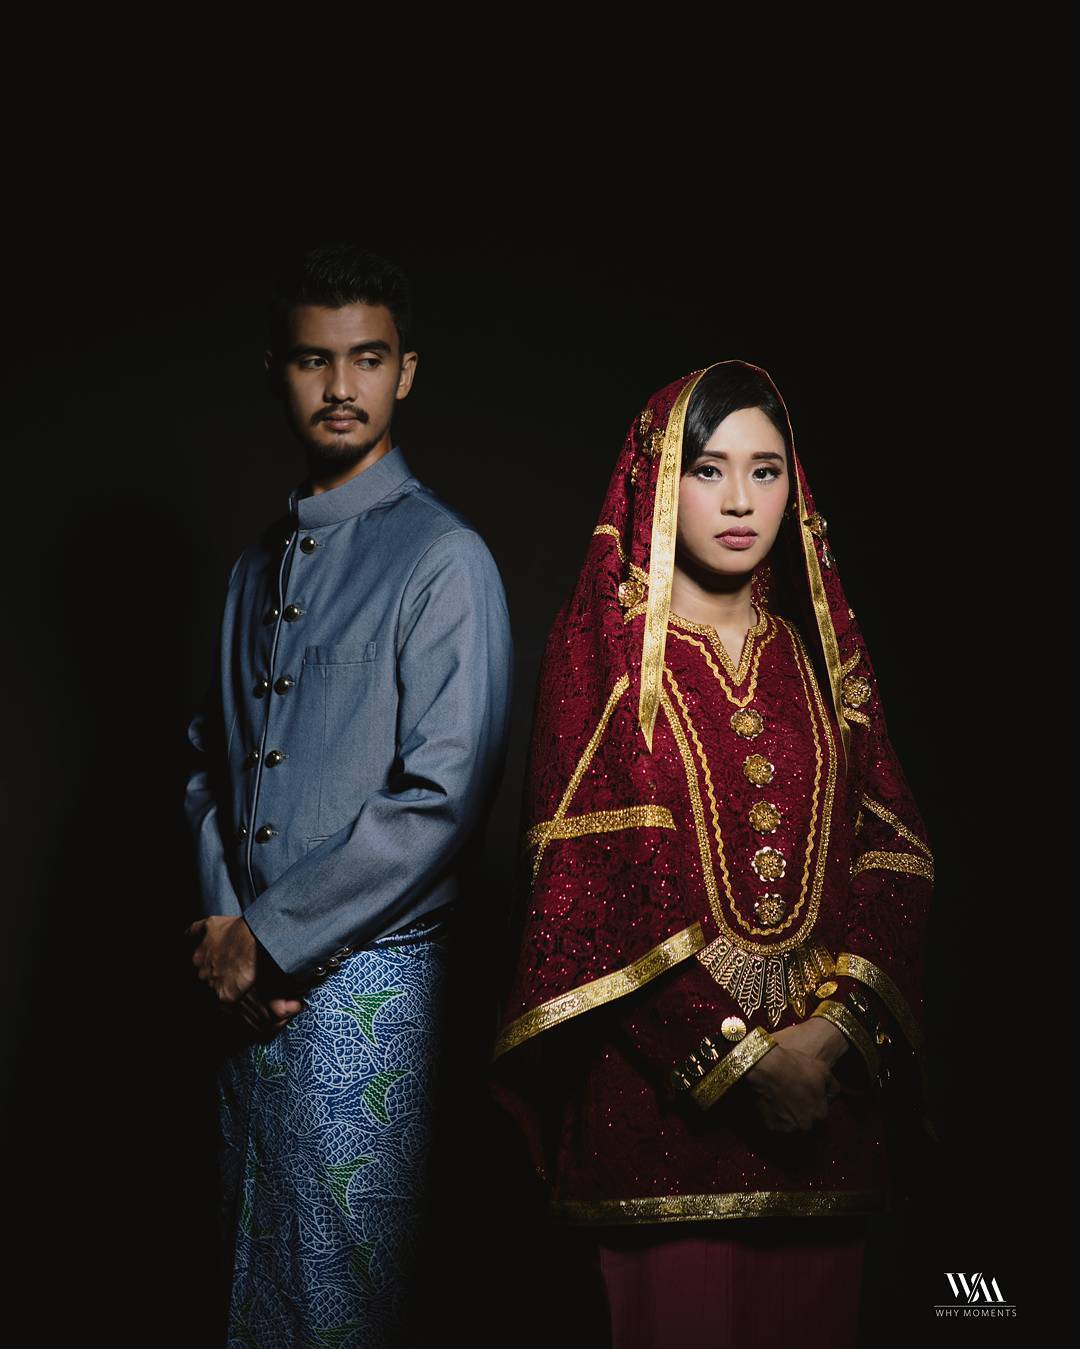 15 Foto Prewedding Sakral Dengan Pakaian Adat Indonesia Mau Coba